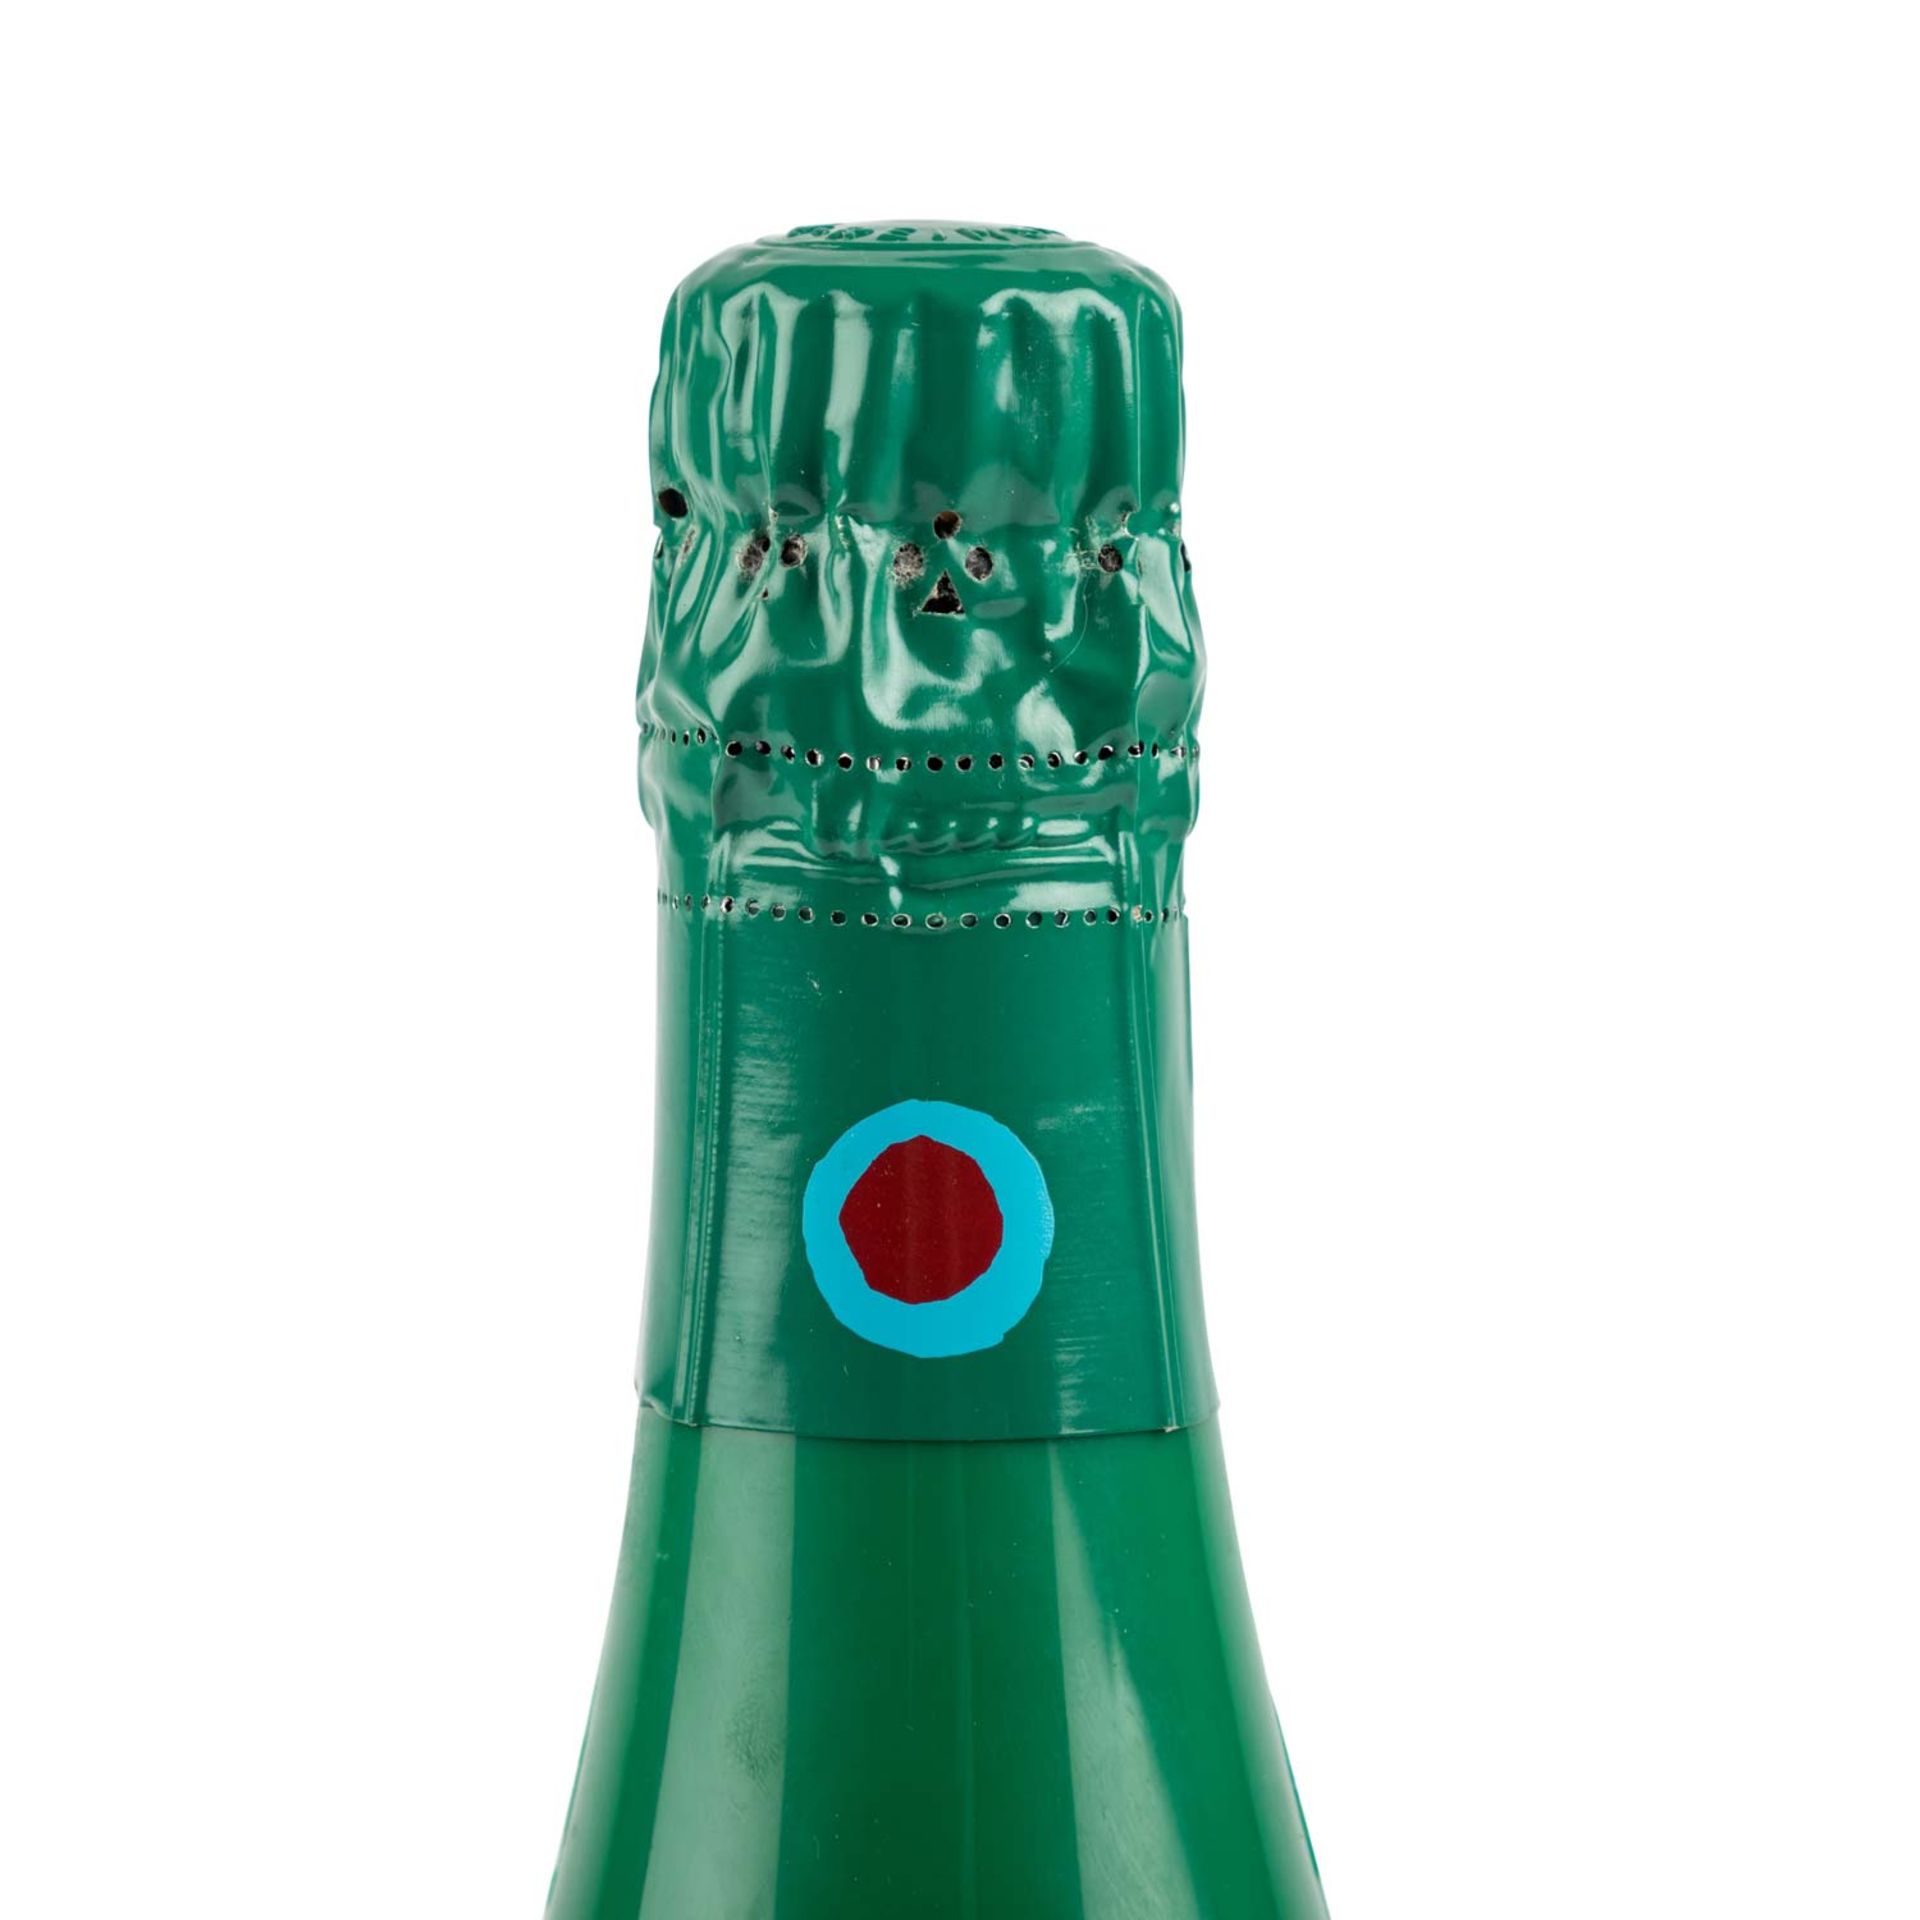 TAITTINGER Champagner 'Collection' 1 Flasche 'Corneille' 1990 - Bild 4 aus 7